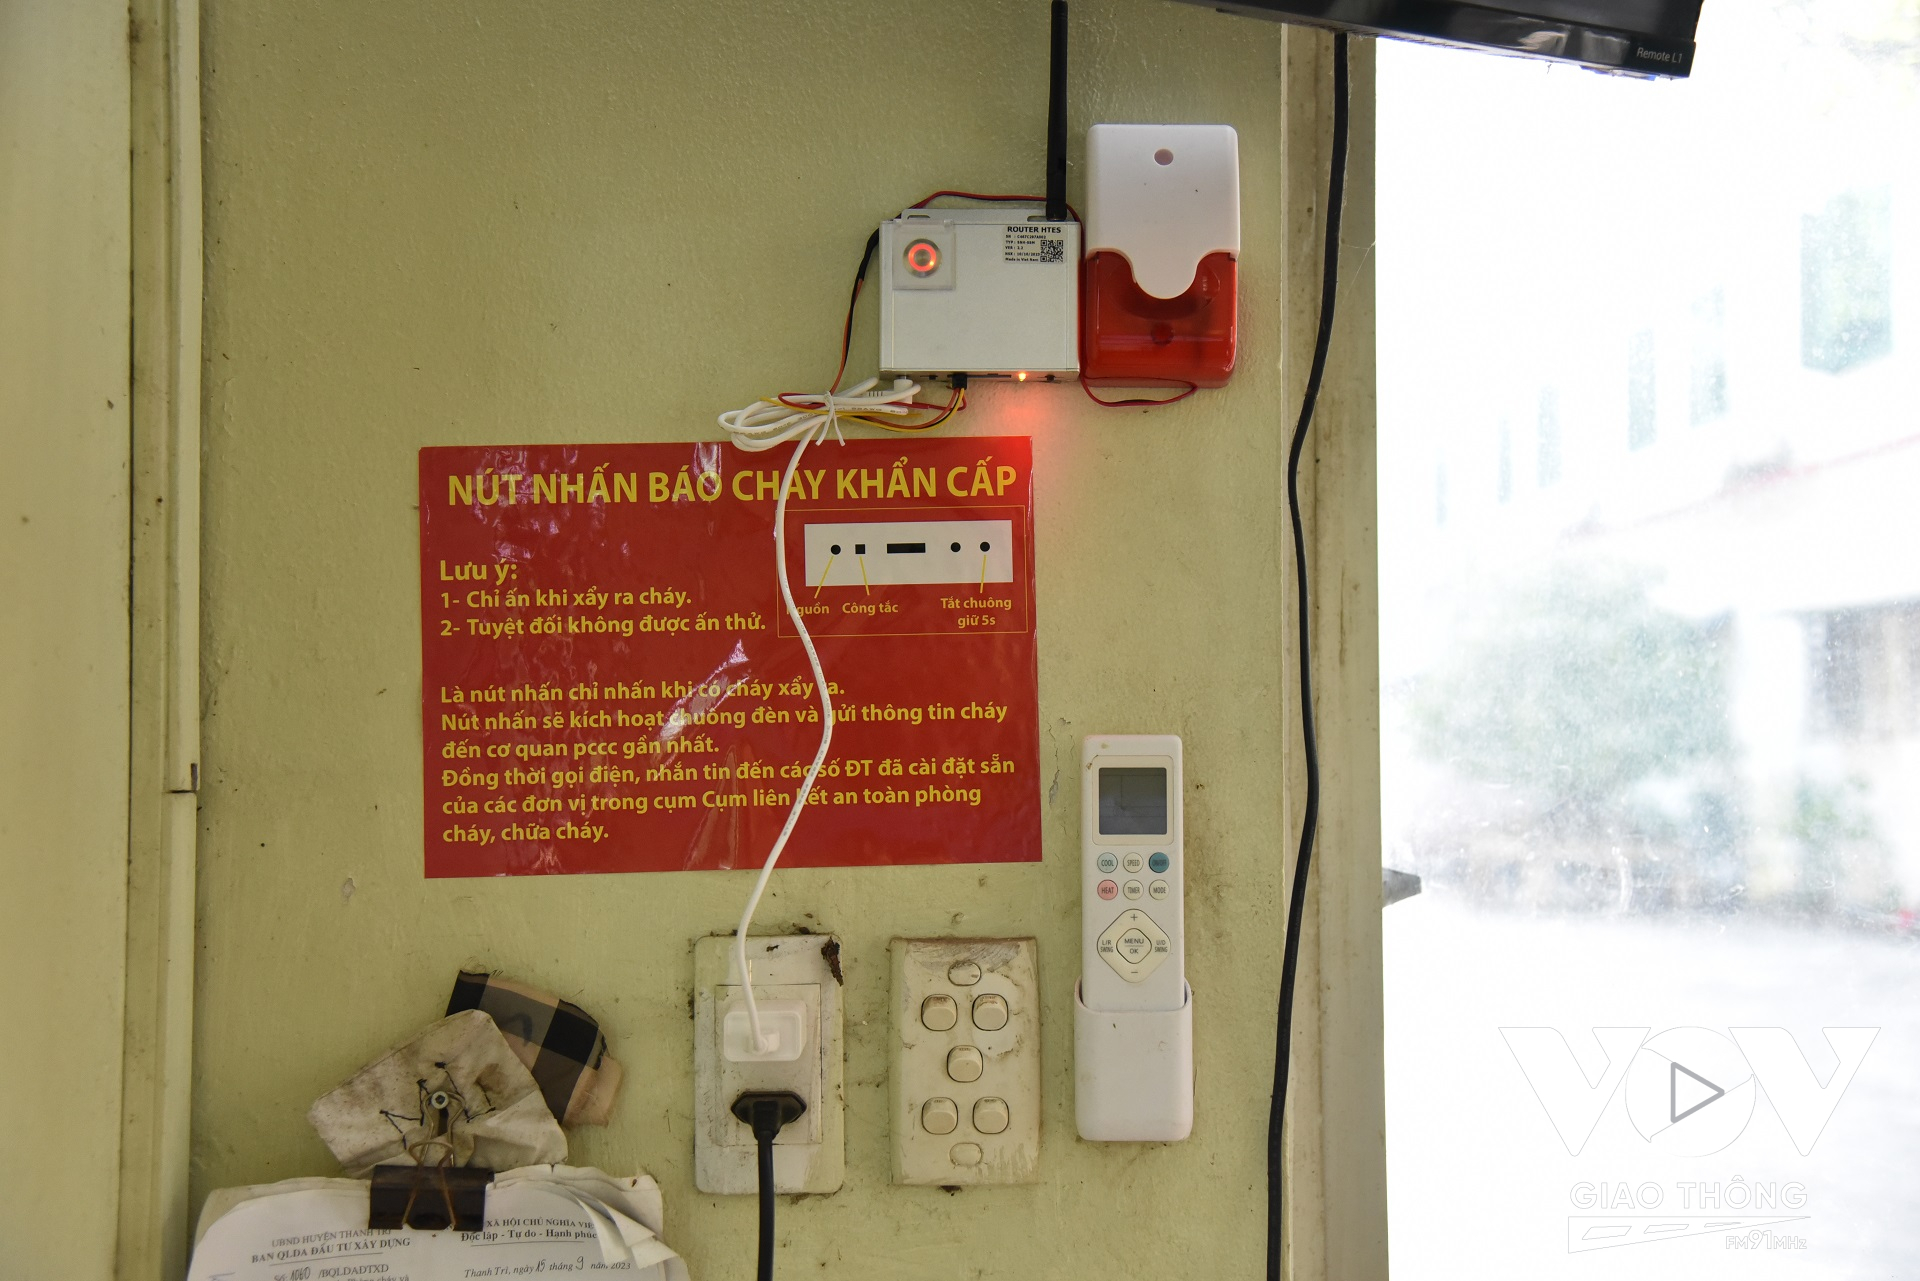 Hệ thống chuông, đèn, nút ấn báo cháy được kết nối giữa các đơn vị, DN trong Cụm liên kết an toàn PCCC” thuộc cụm công nghiệp Ngọc Hồi